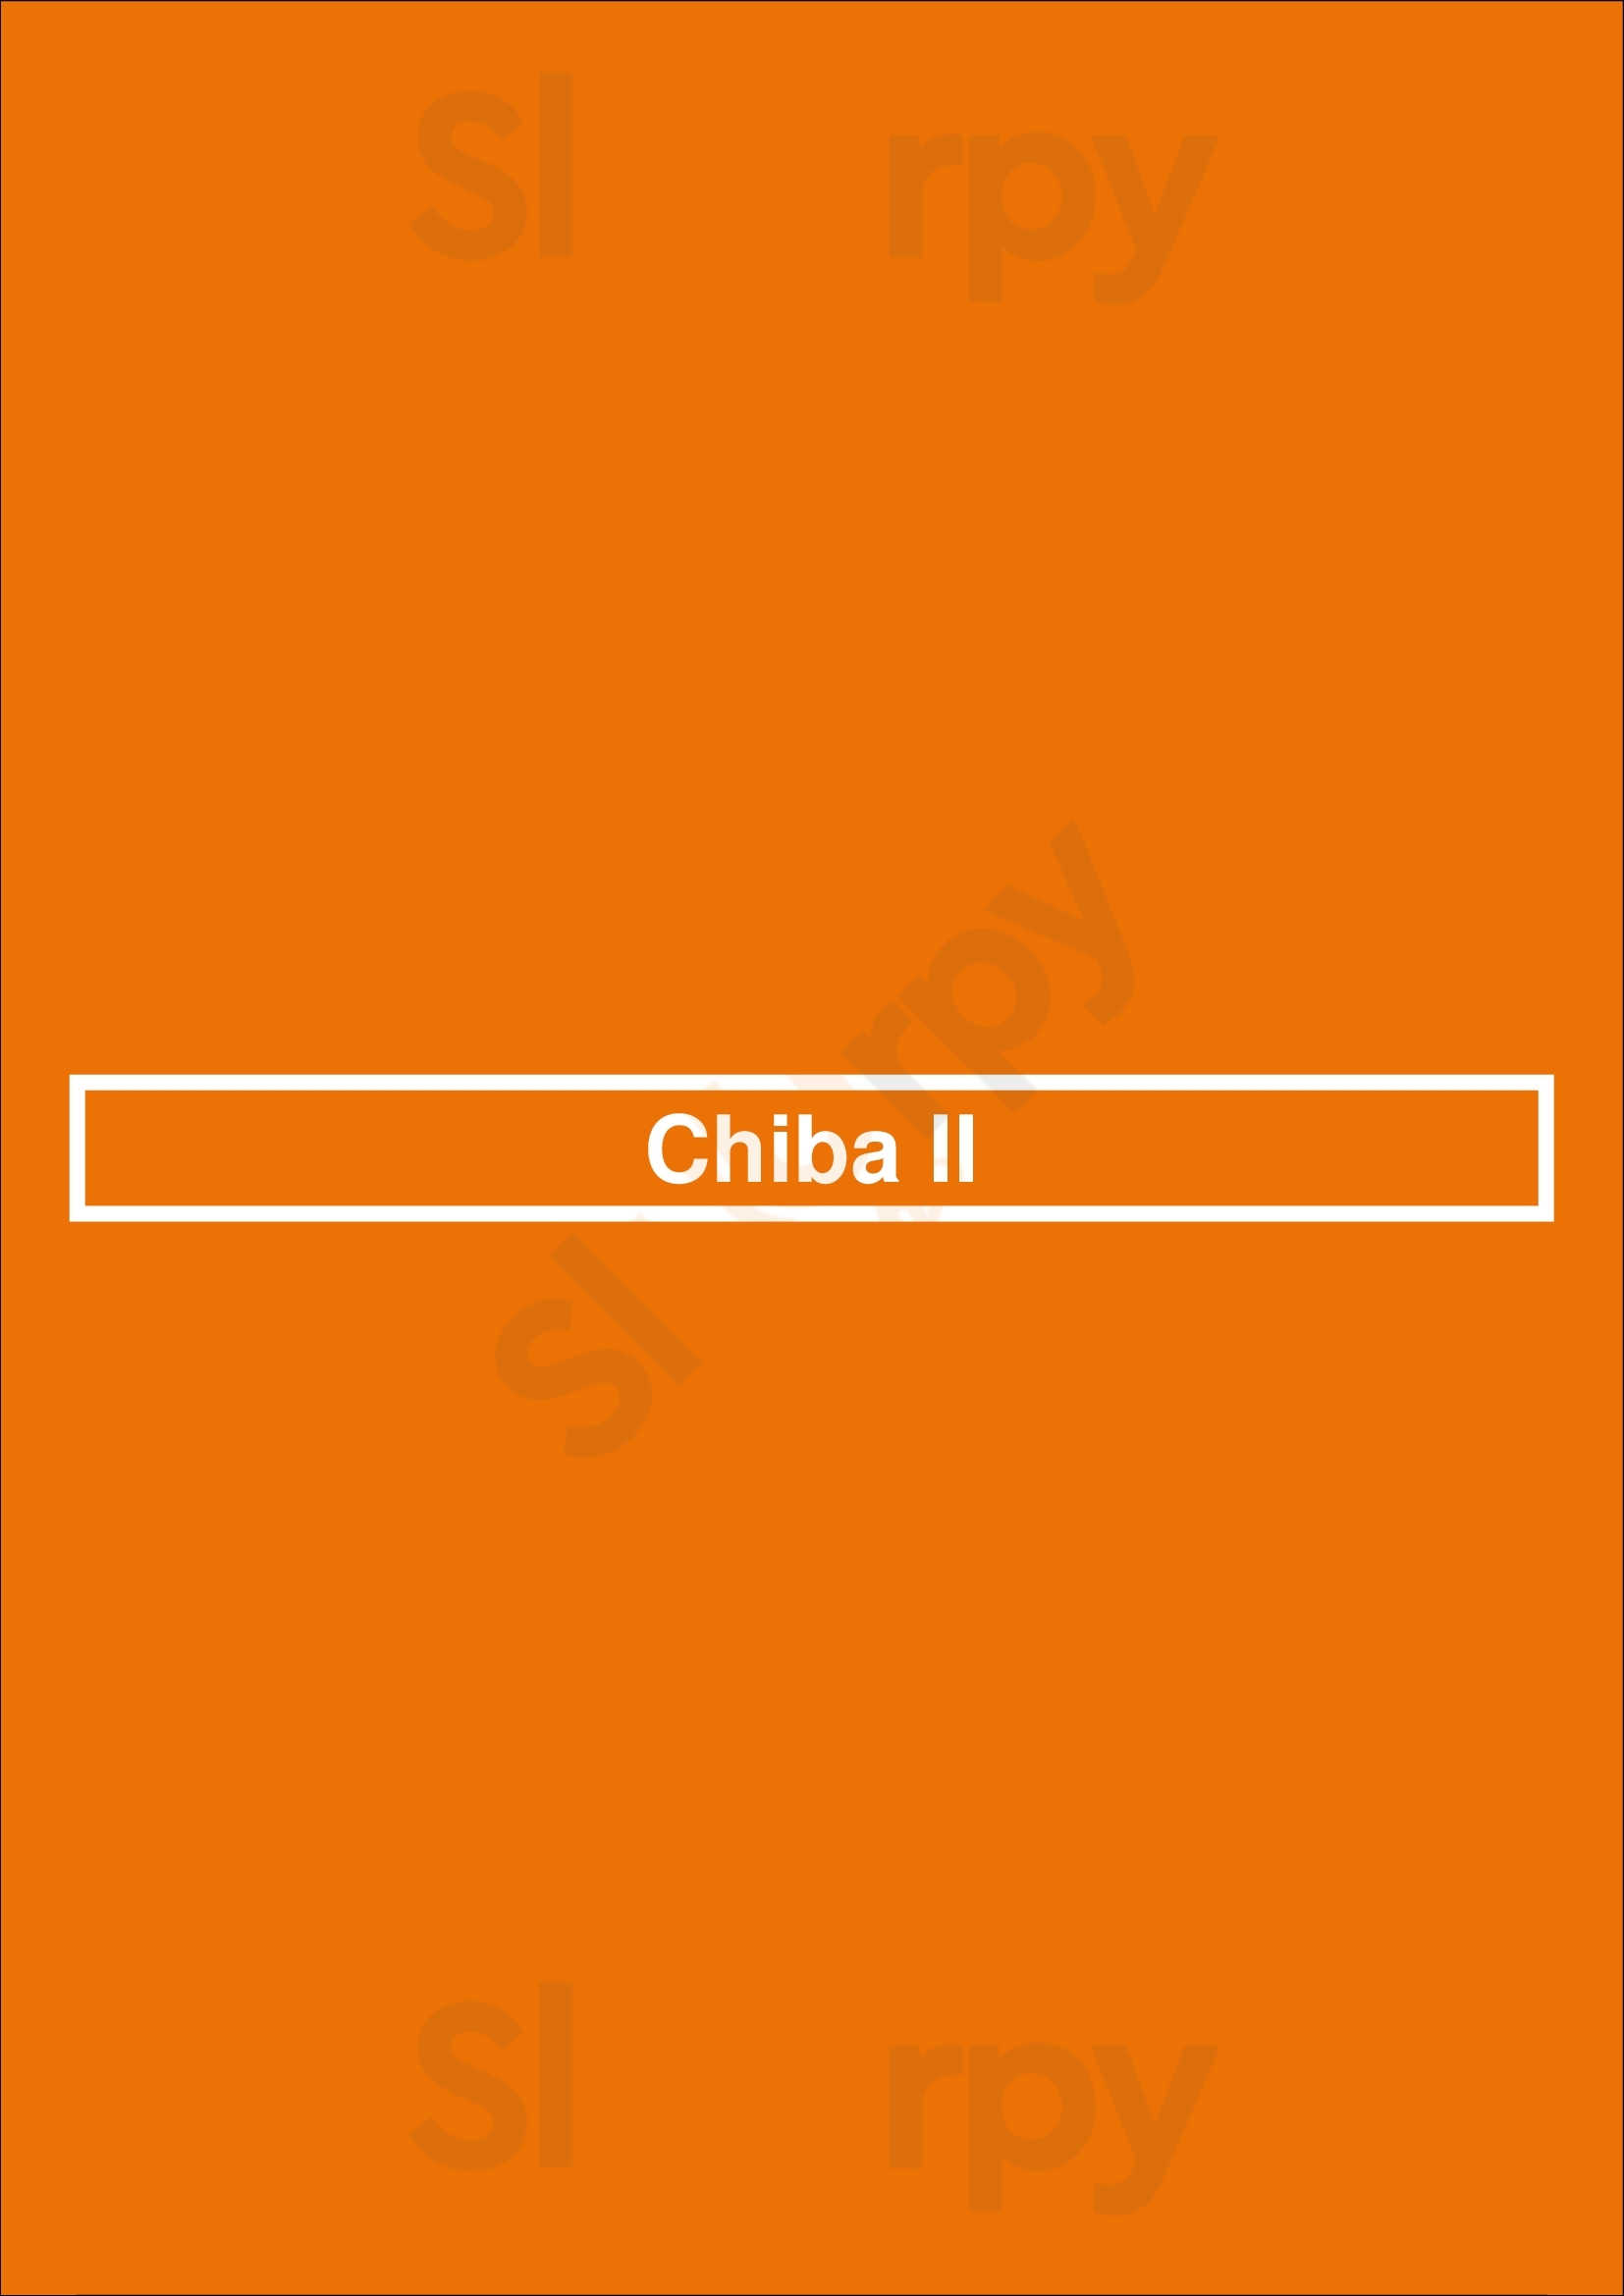 Chiba Ii San Diego Menu - 1